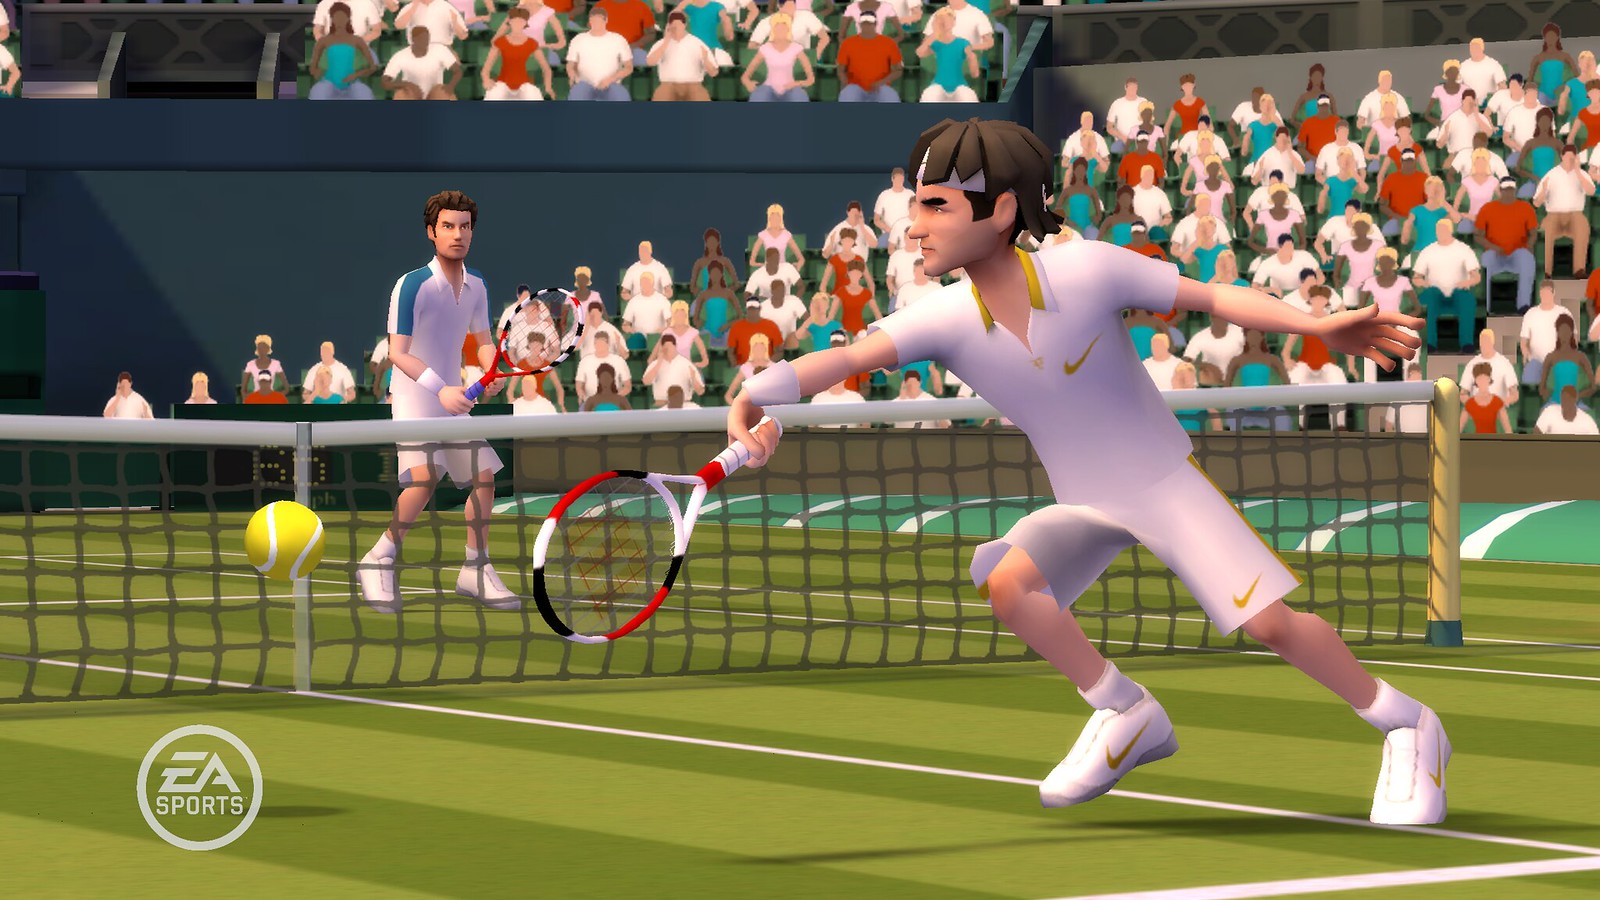 Теннис игра любителей. Игра в теннис. Гранд-слэм теннис. Wii Tennis. EA Sports Grand Slam Tennis.